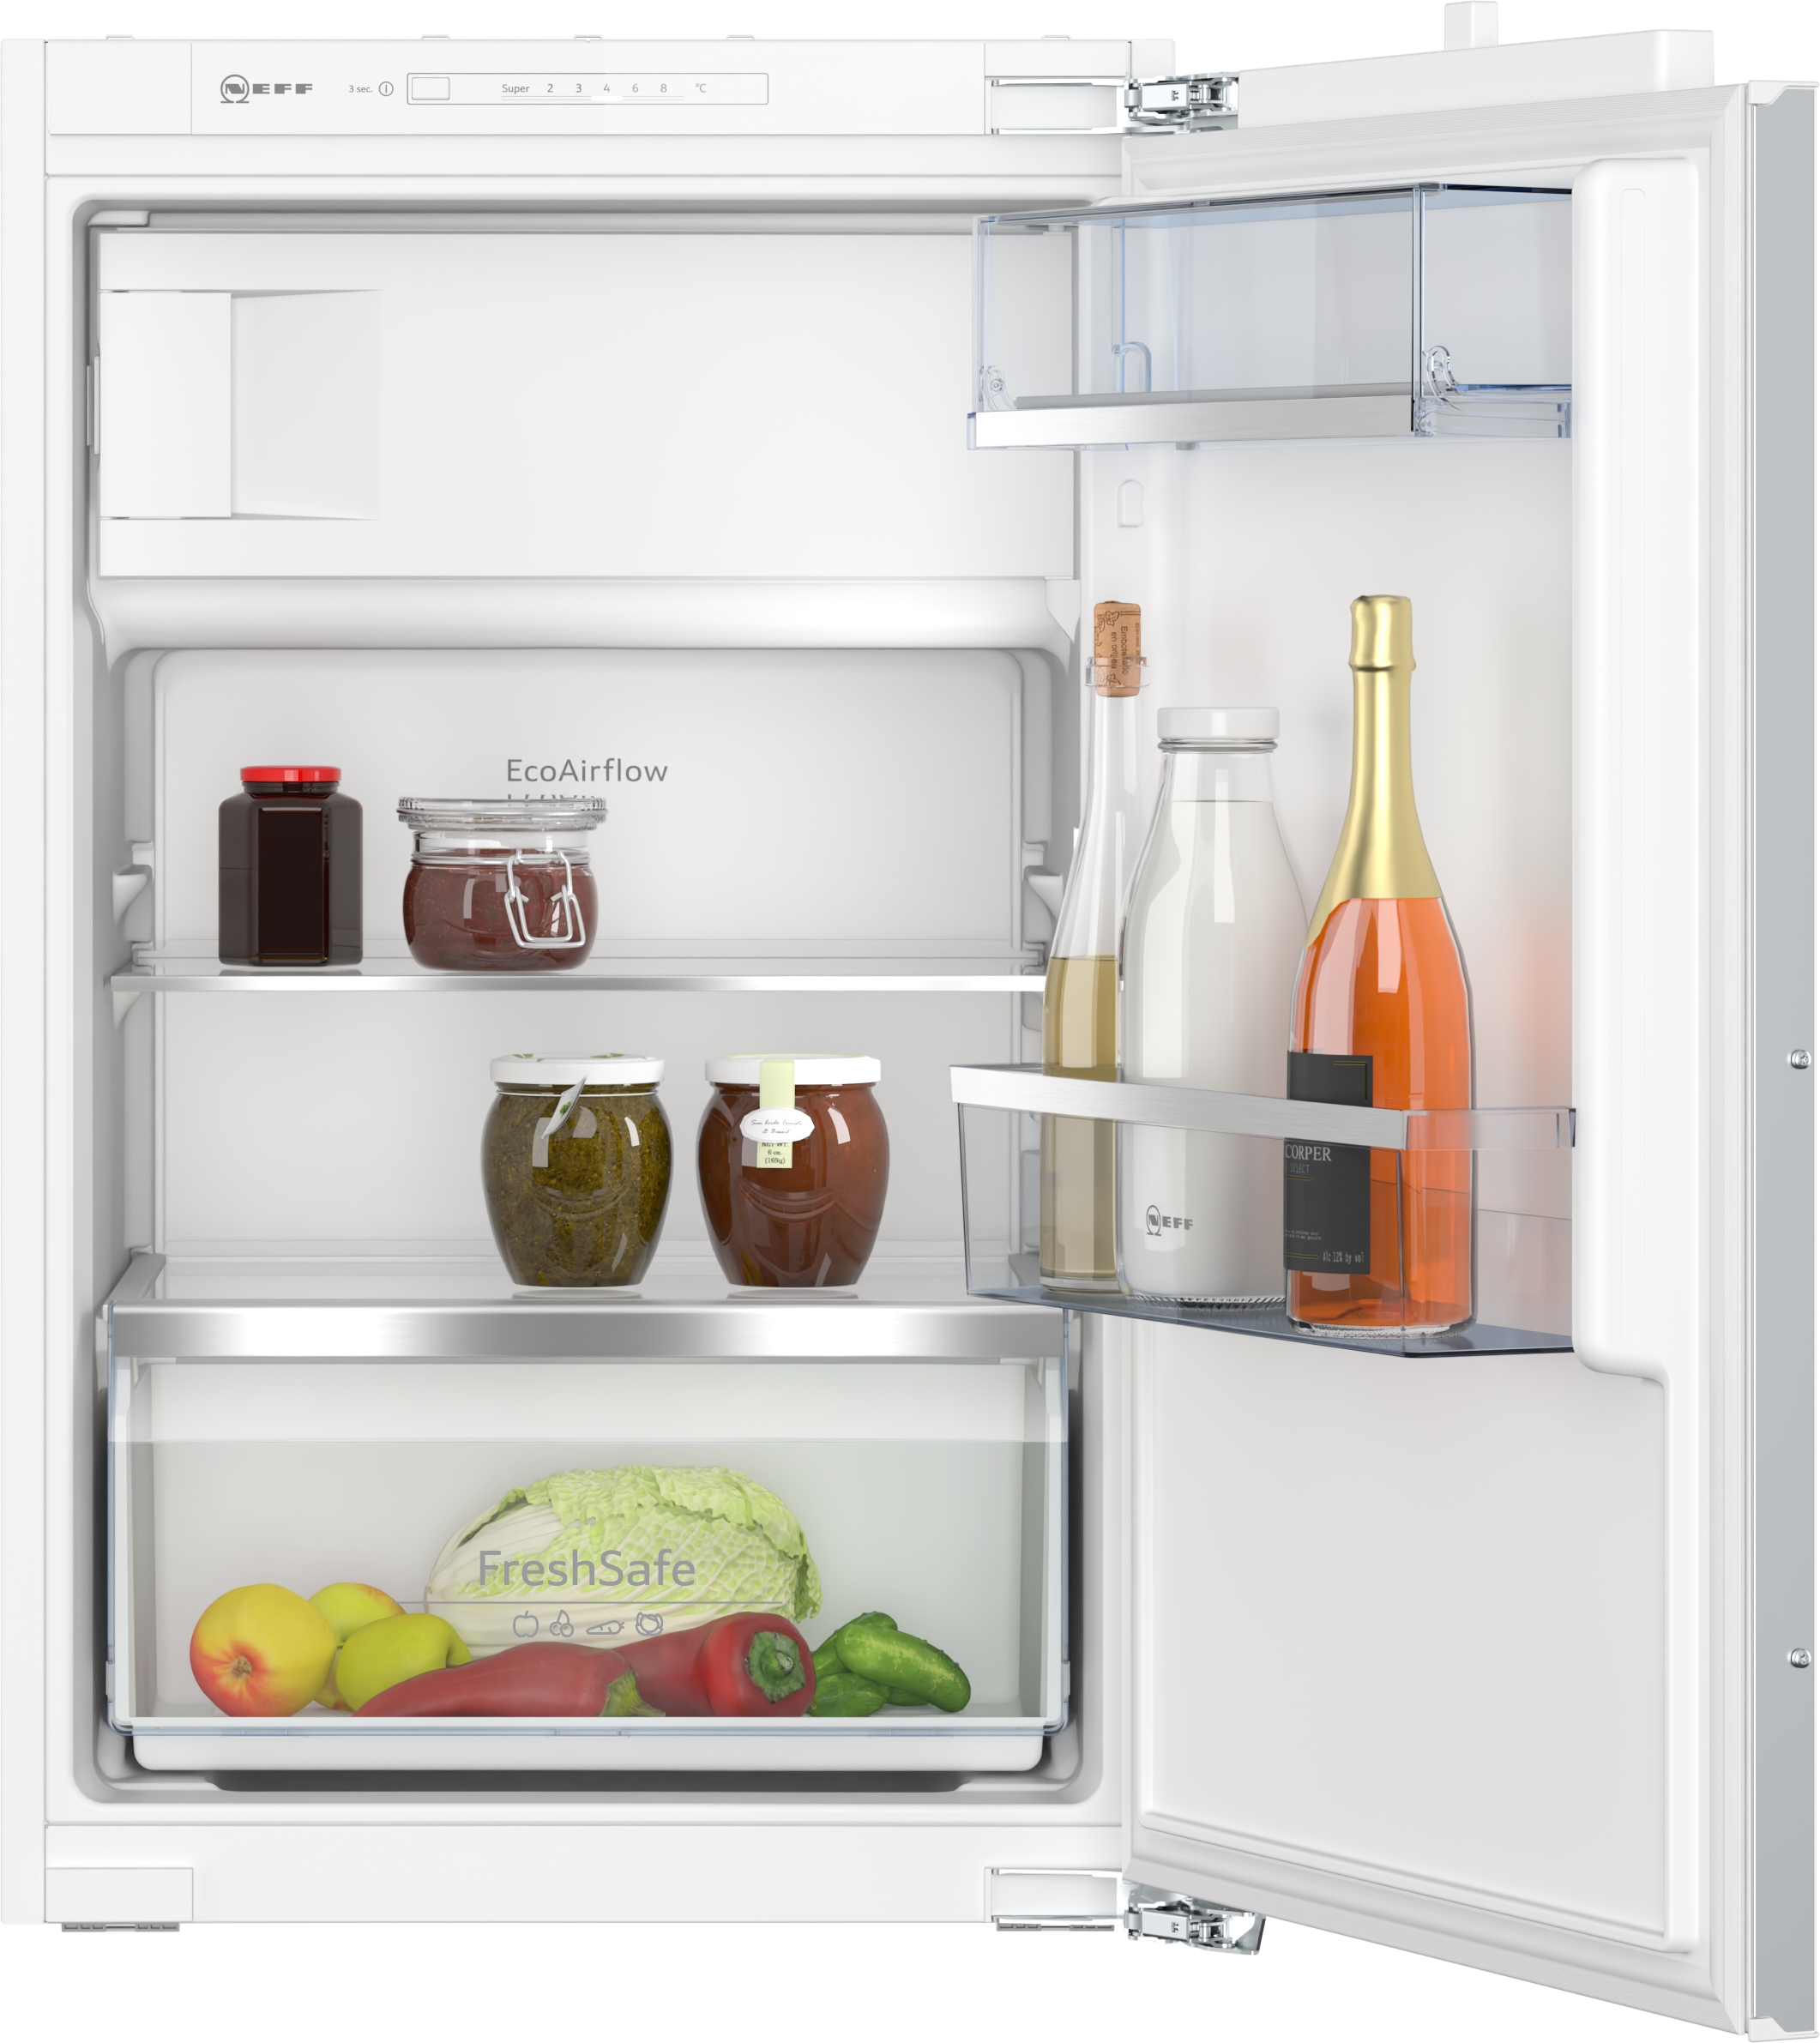 NEFF Einbau-Kühlschrank, KI2222FE0, 87.4 cm hoch, 54.1 cm breit,  Gefrierfach | 4242004268383